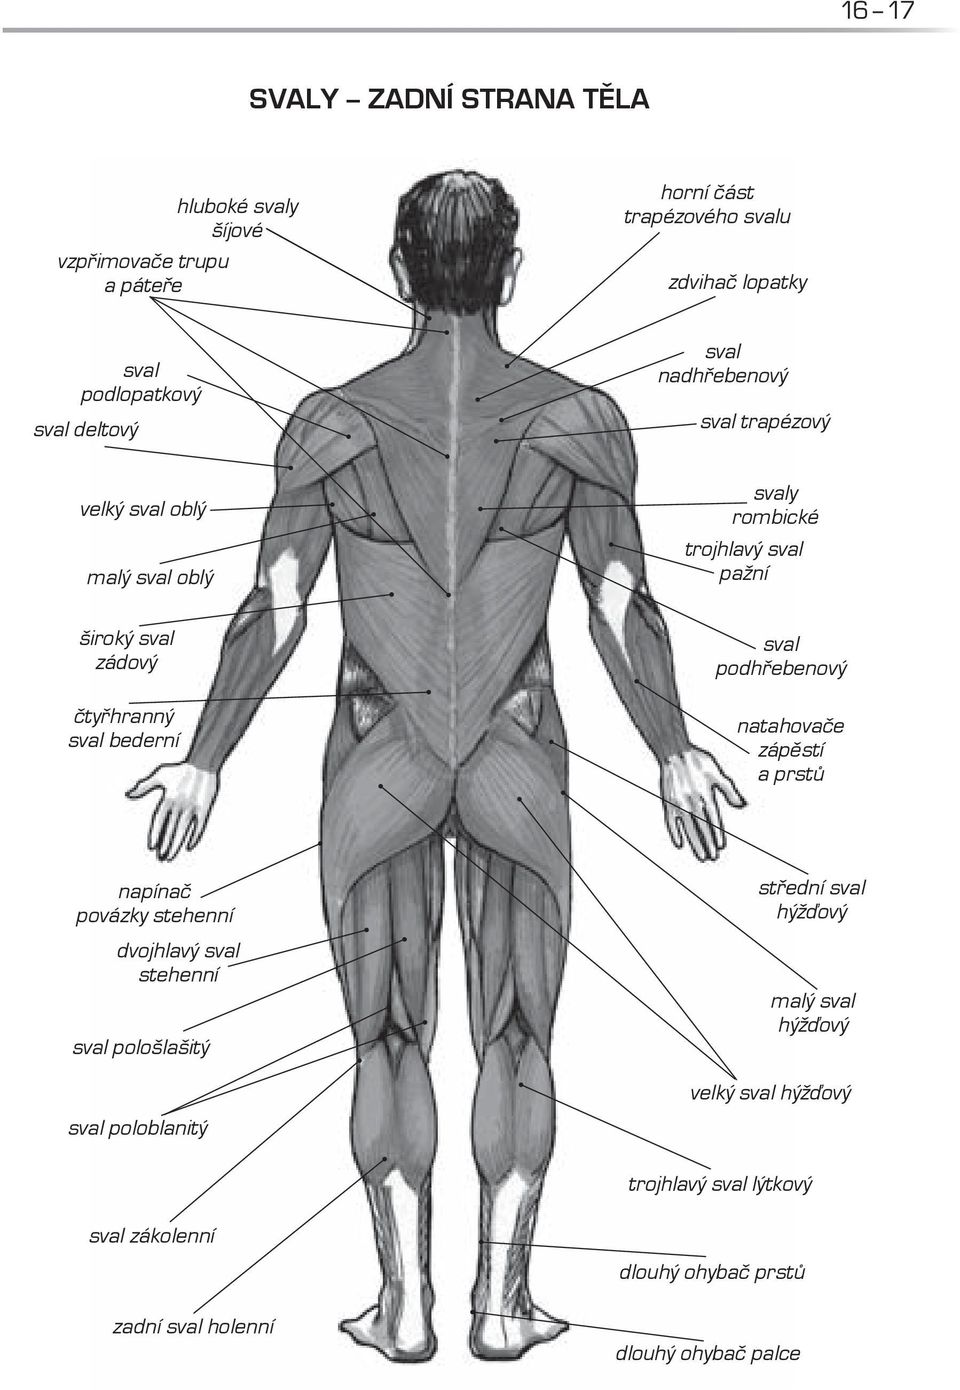 sval bederní sval podhřebenový natahovače zápěstí a prstů napínač povázky stehenní dvojhlavý sval stehenní sval pološlašitý sval poloblanitý